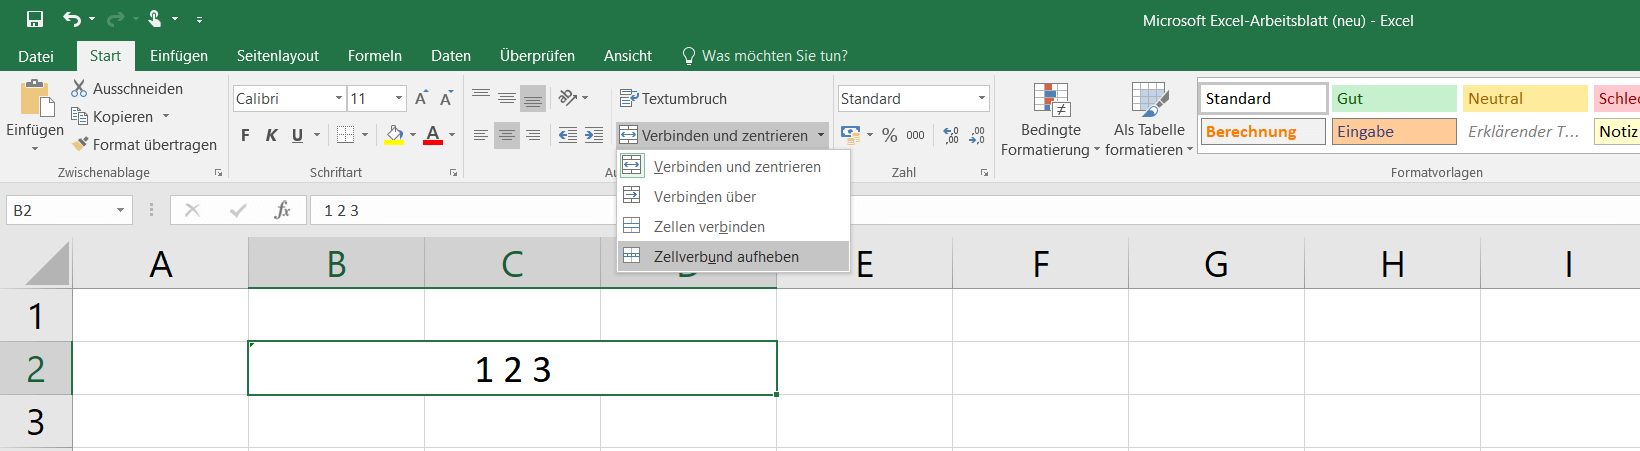 Zellenverbund-Beispiel in Excel 2016